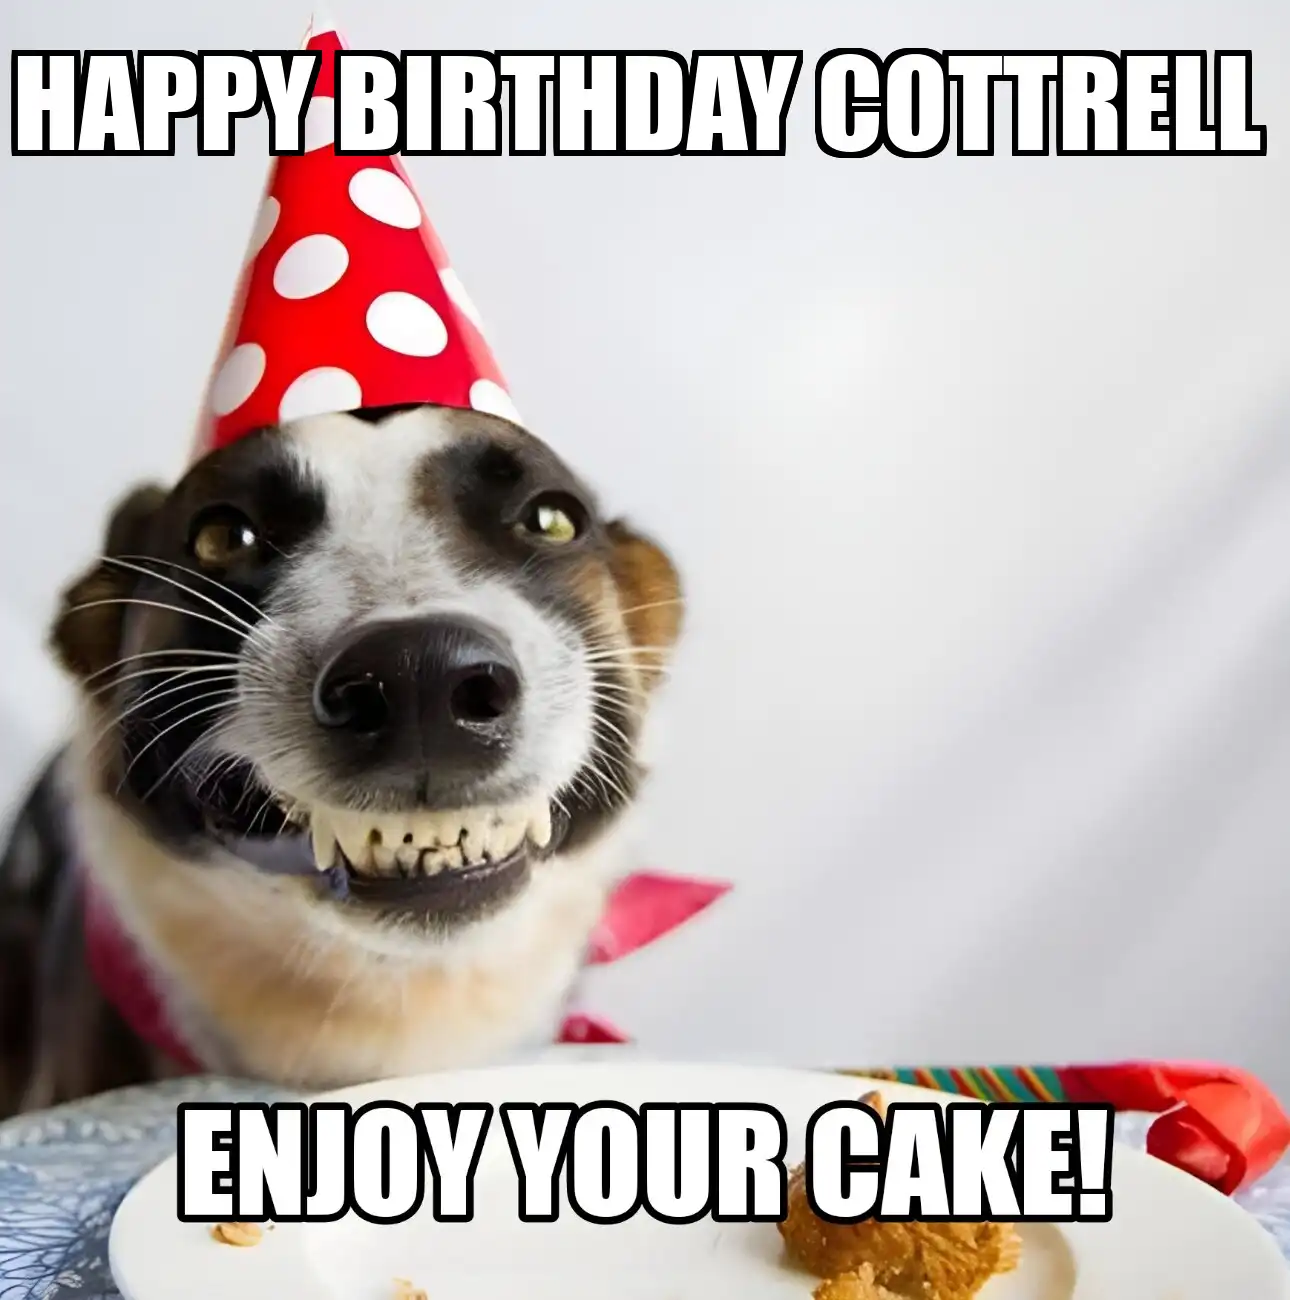 Happy Birthday Cottrell Enjoy Your Cake Dog Meme